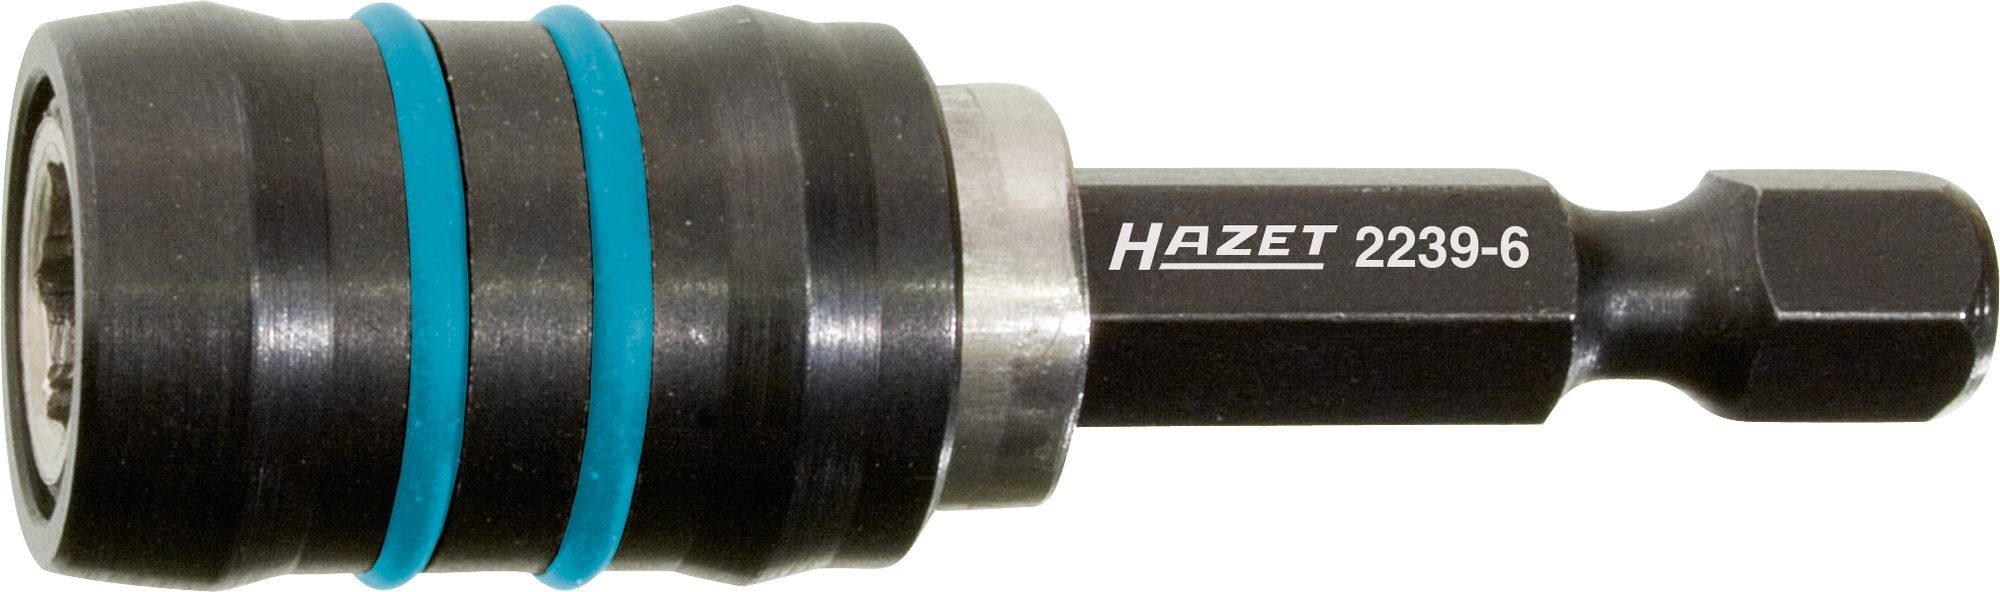 HAZET Bit-Set Hazet Verbindungsteil, 2239-6